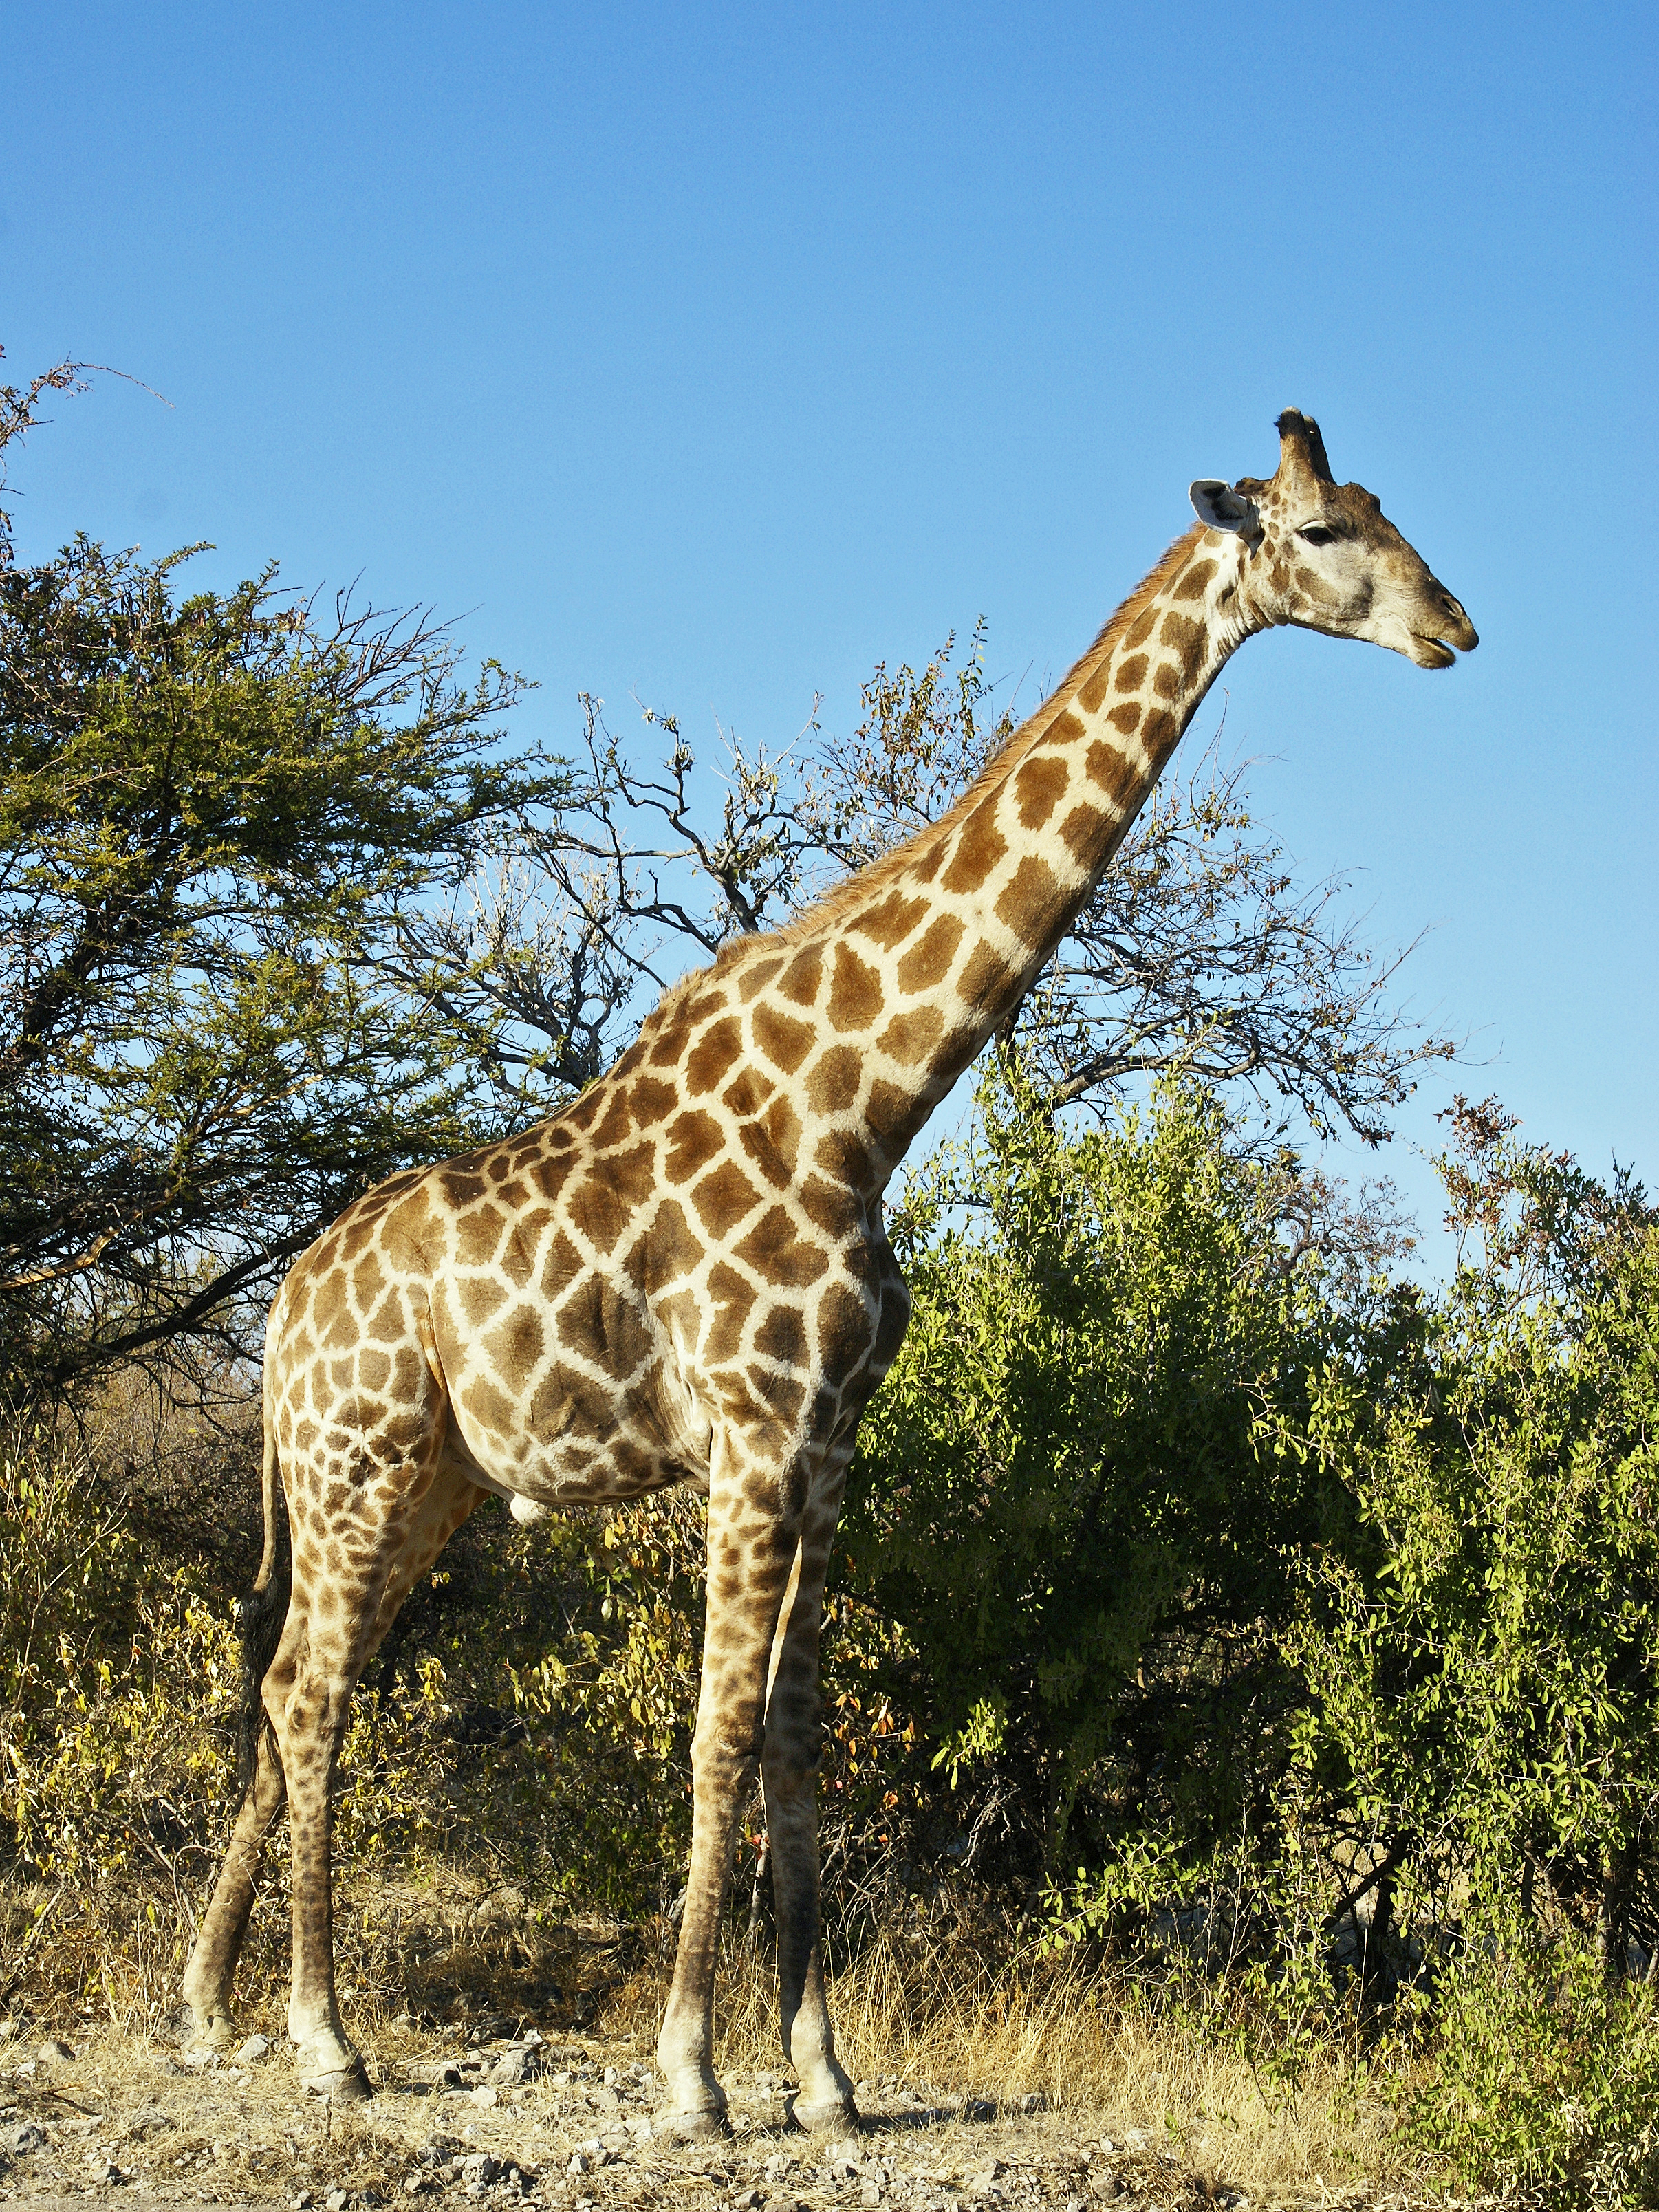 Giraffe. Author: Hans Hillewaert CC-BY-SA-3.0 